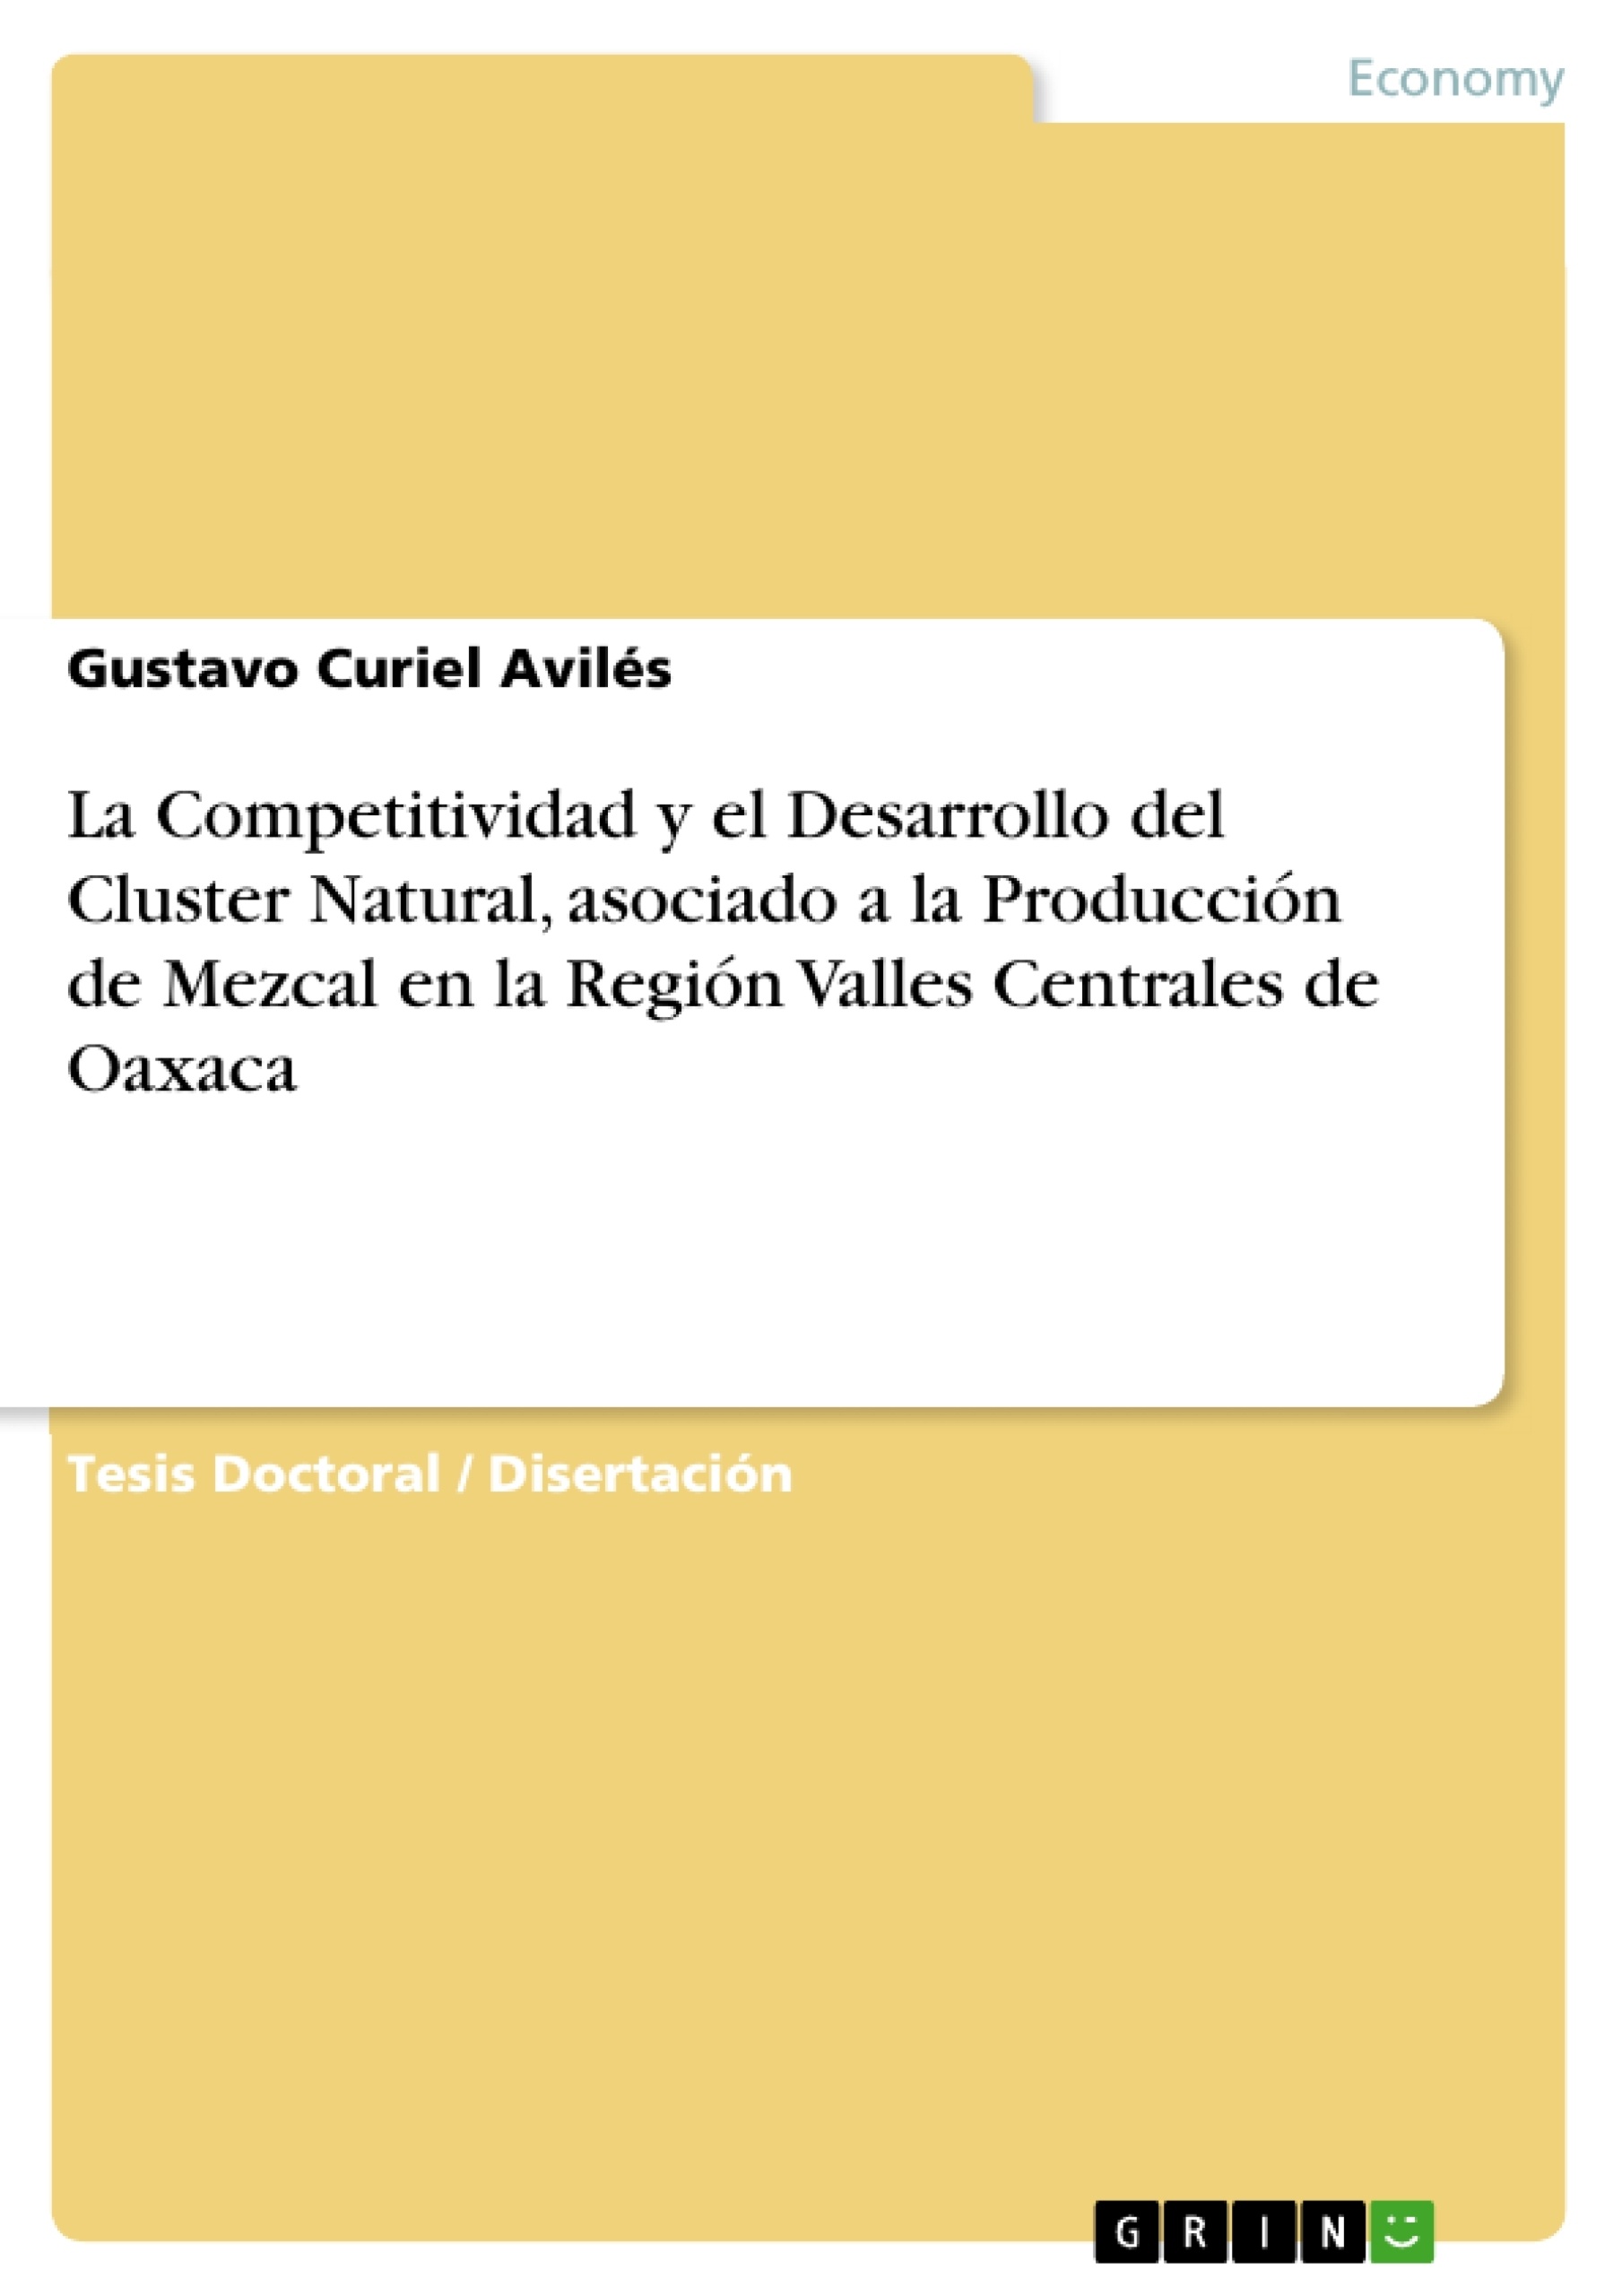 Título: La Competitividad y el Desarrollo del Cluster Natural, asociado a la Producción de Mezcal en la Región Valles Centrales de Oaxaca